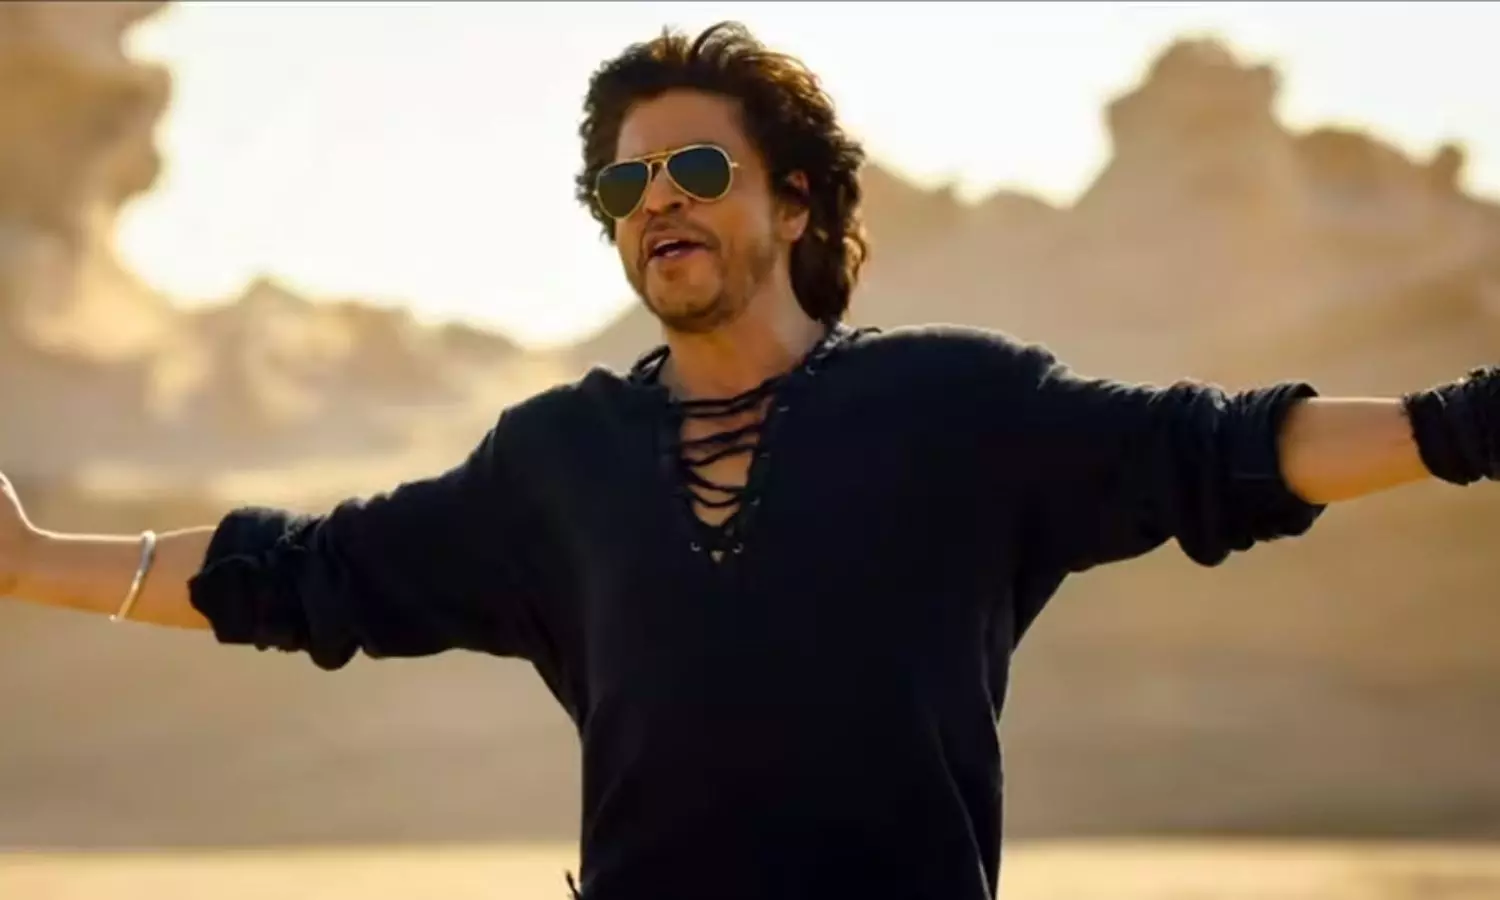 शाहरुख खान की डंकी बनी यूरोप के सबसे बड़े थिएटर में रिलीज होने वाली पहली बॉलीवुड फिल्म